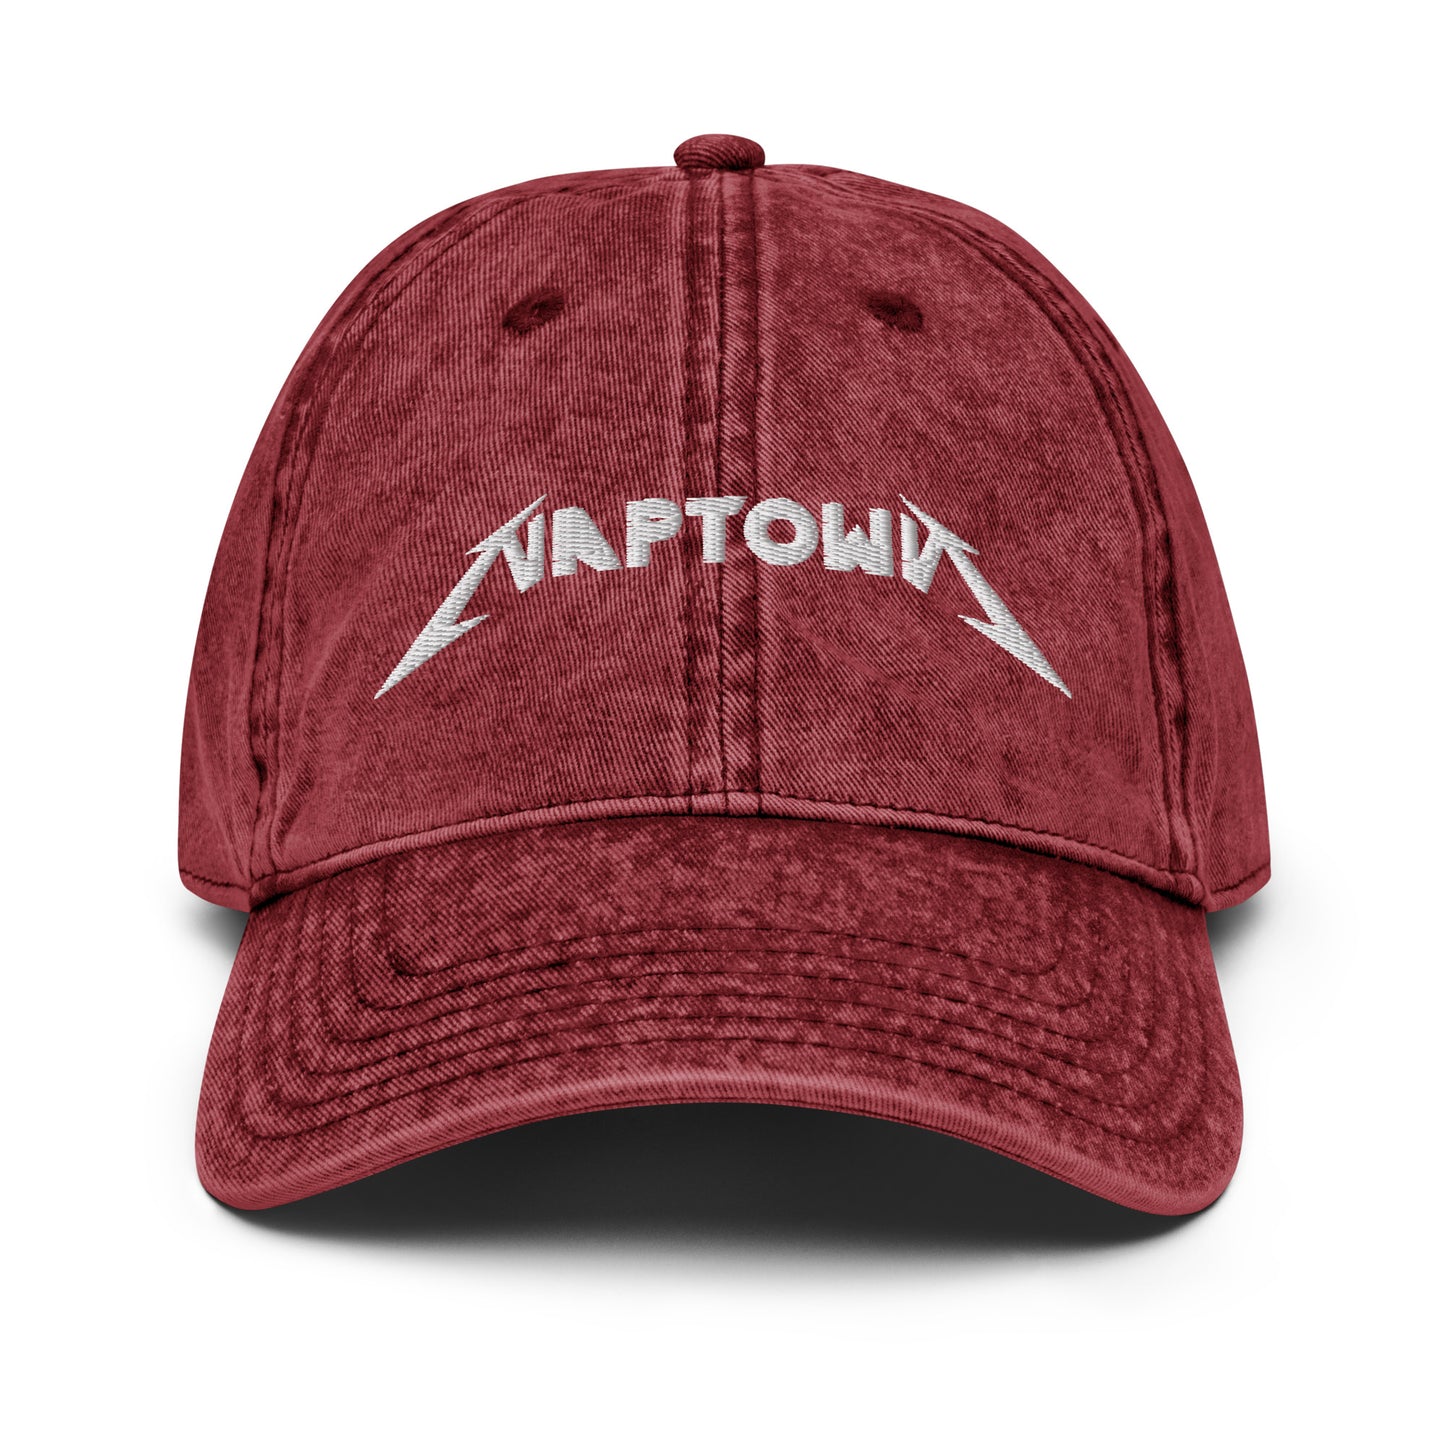 NAPTOWN - Vintage Cotton Twill Daddy Hat